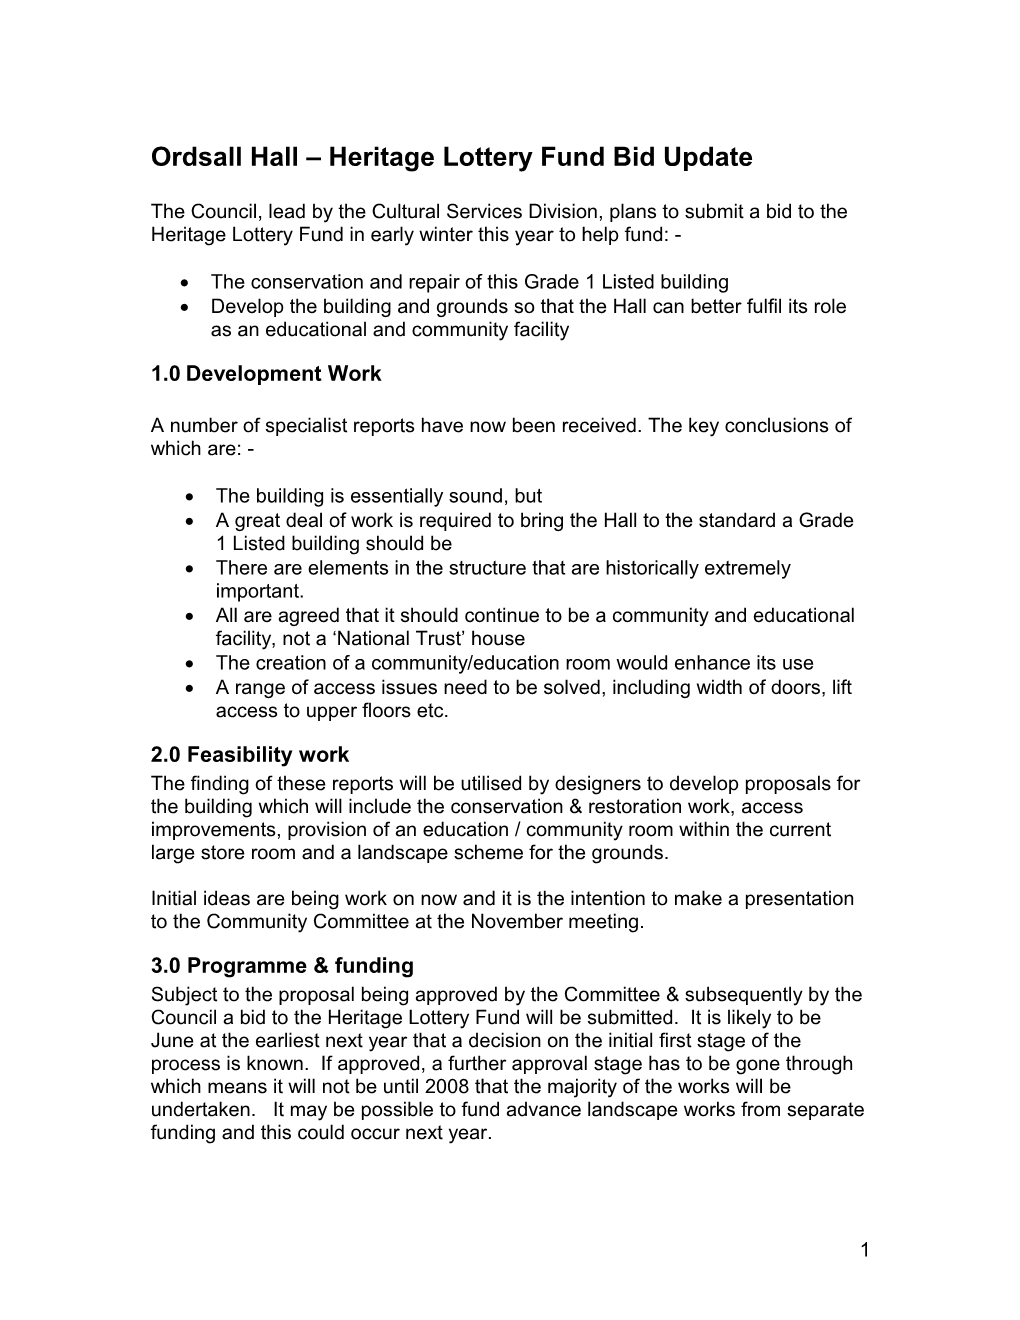 Ordsall Hall Heritage Lottery Fund Bid Update